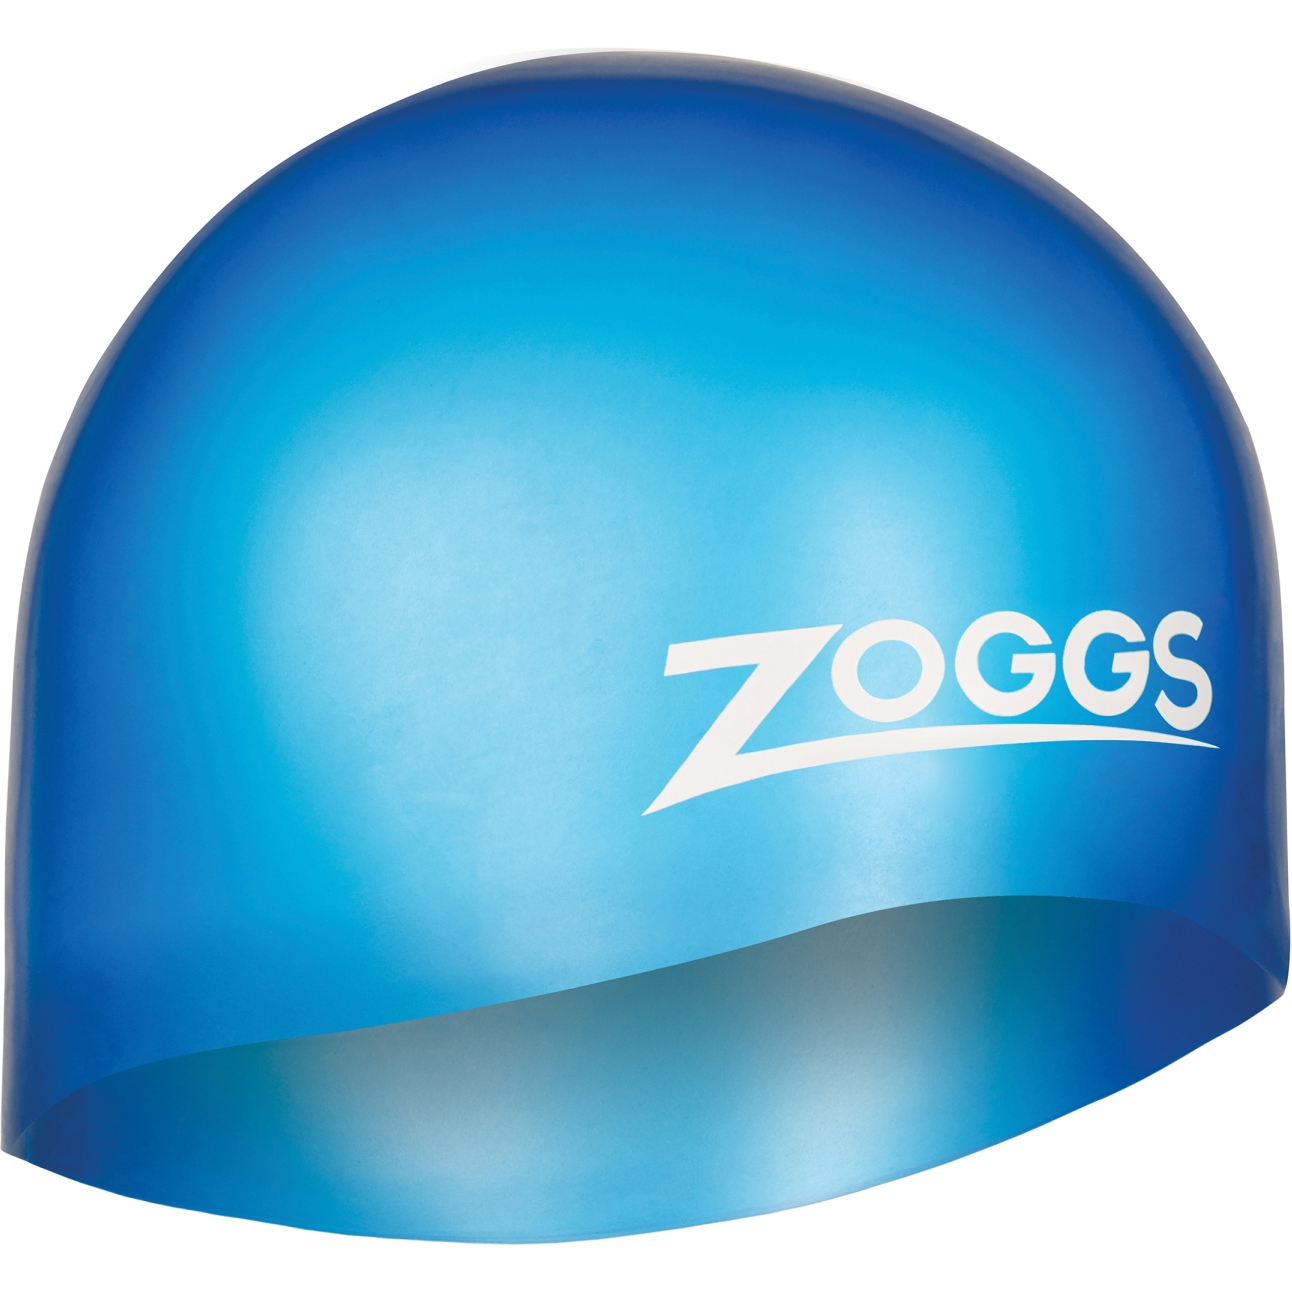 Immagine prodotto da Zoggs Cuffia Nuoto - Easy Fit Silicone - blu